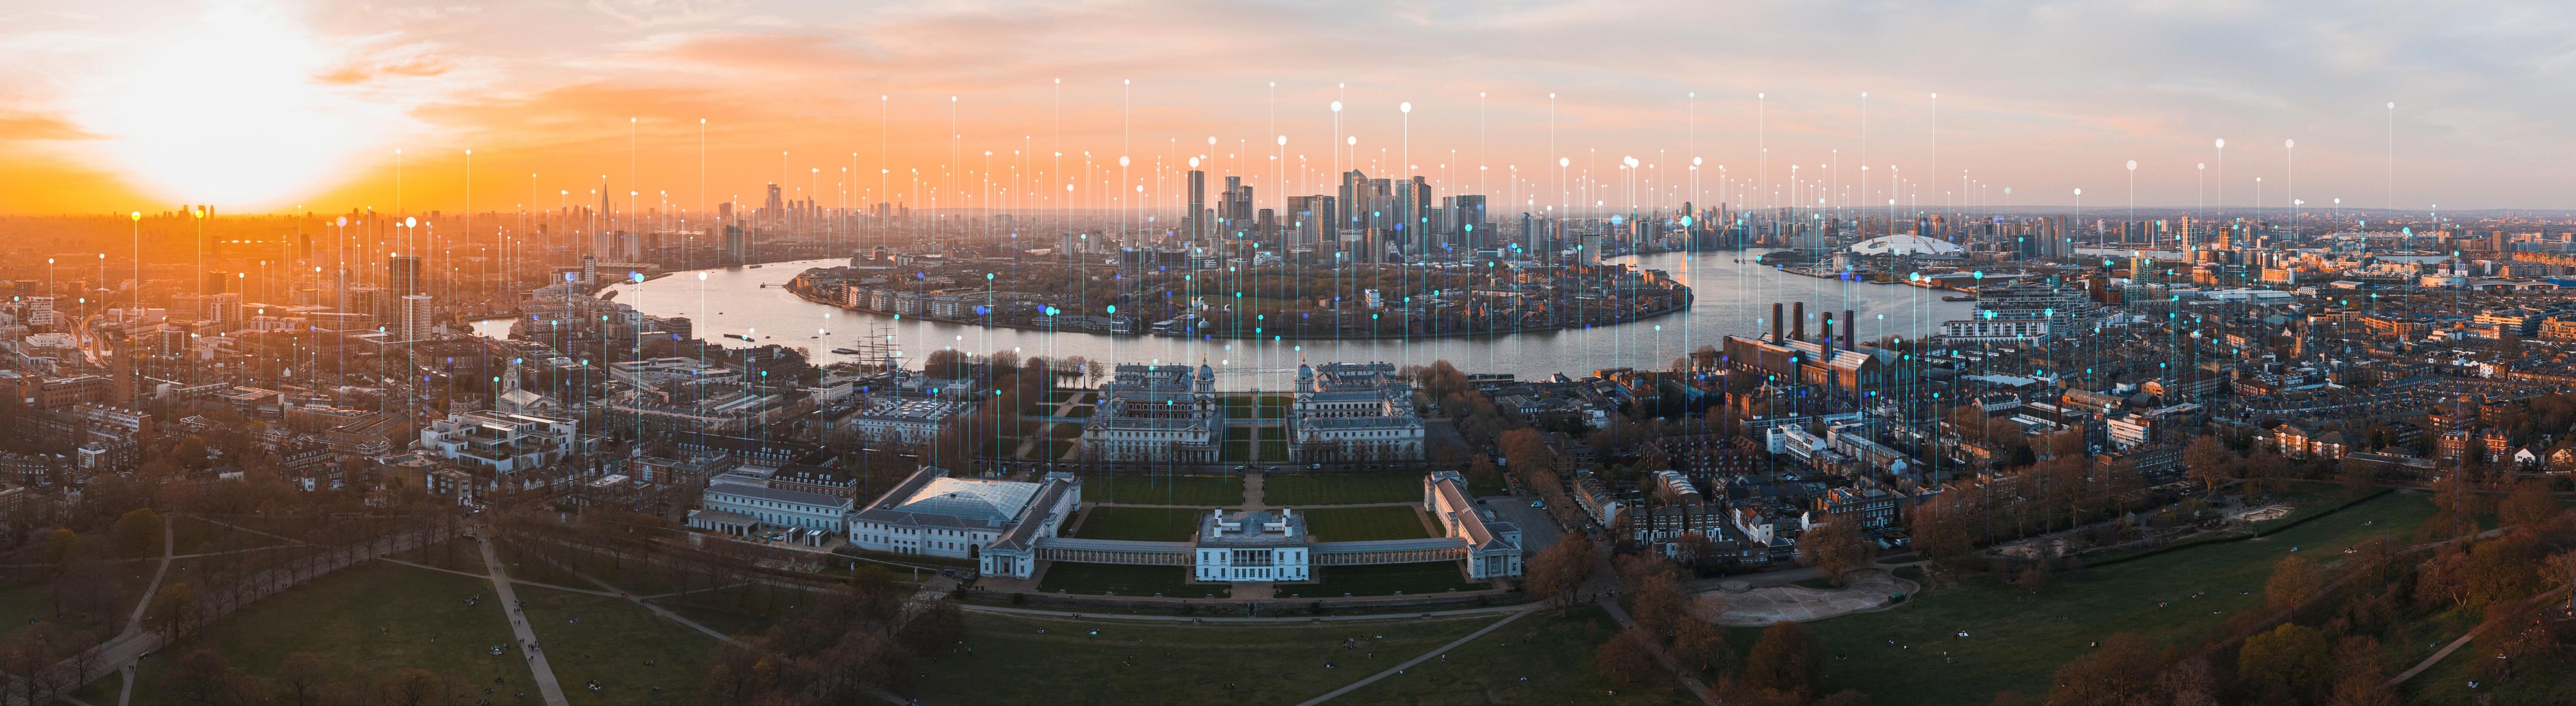 Experience 360° panoramic views of London